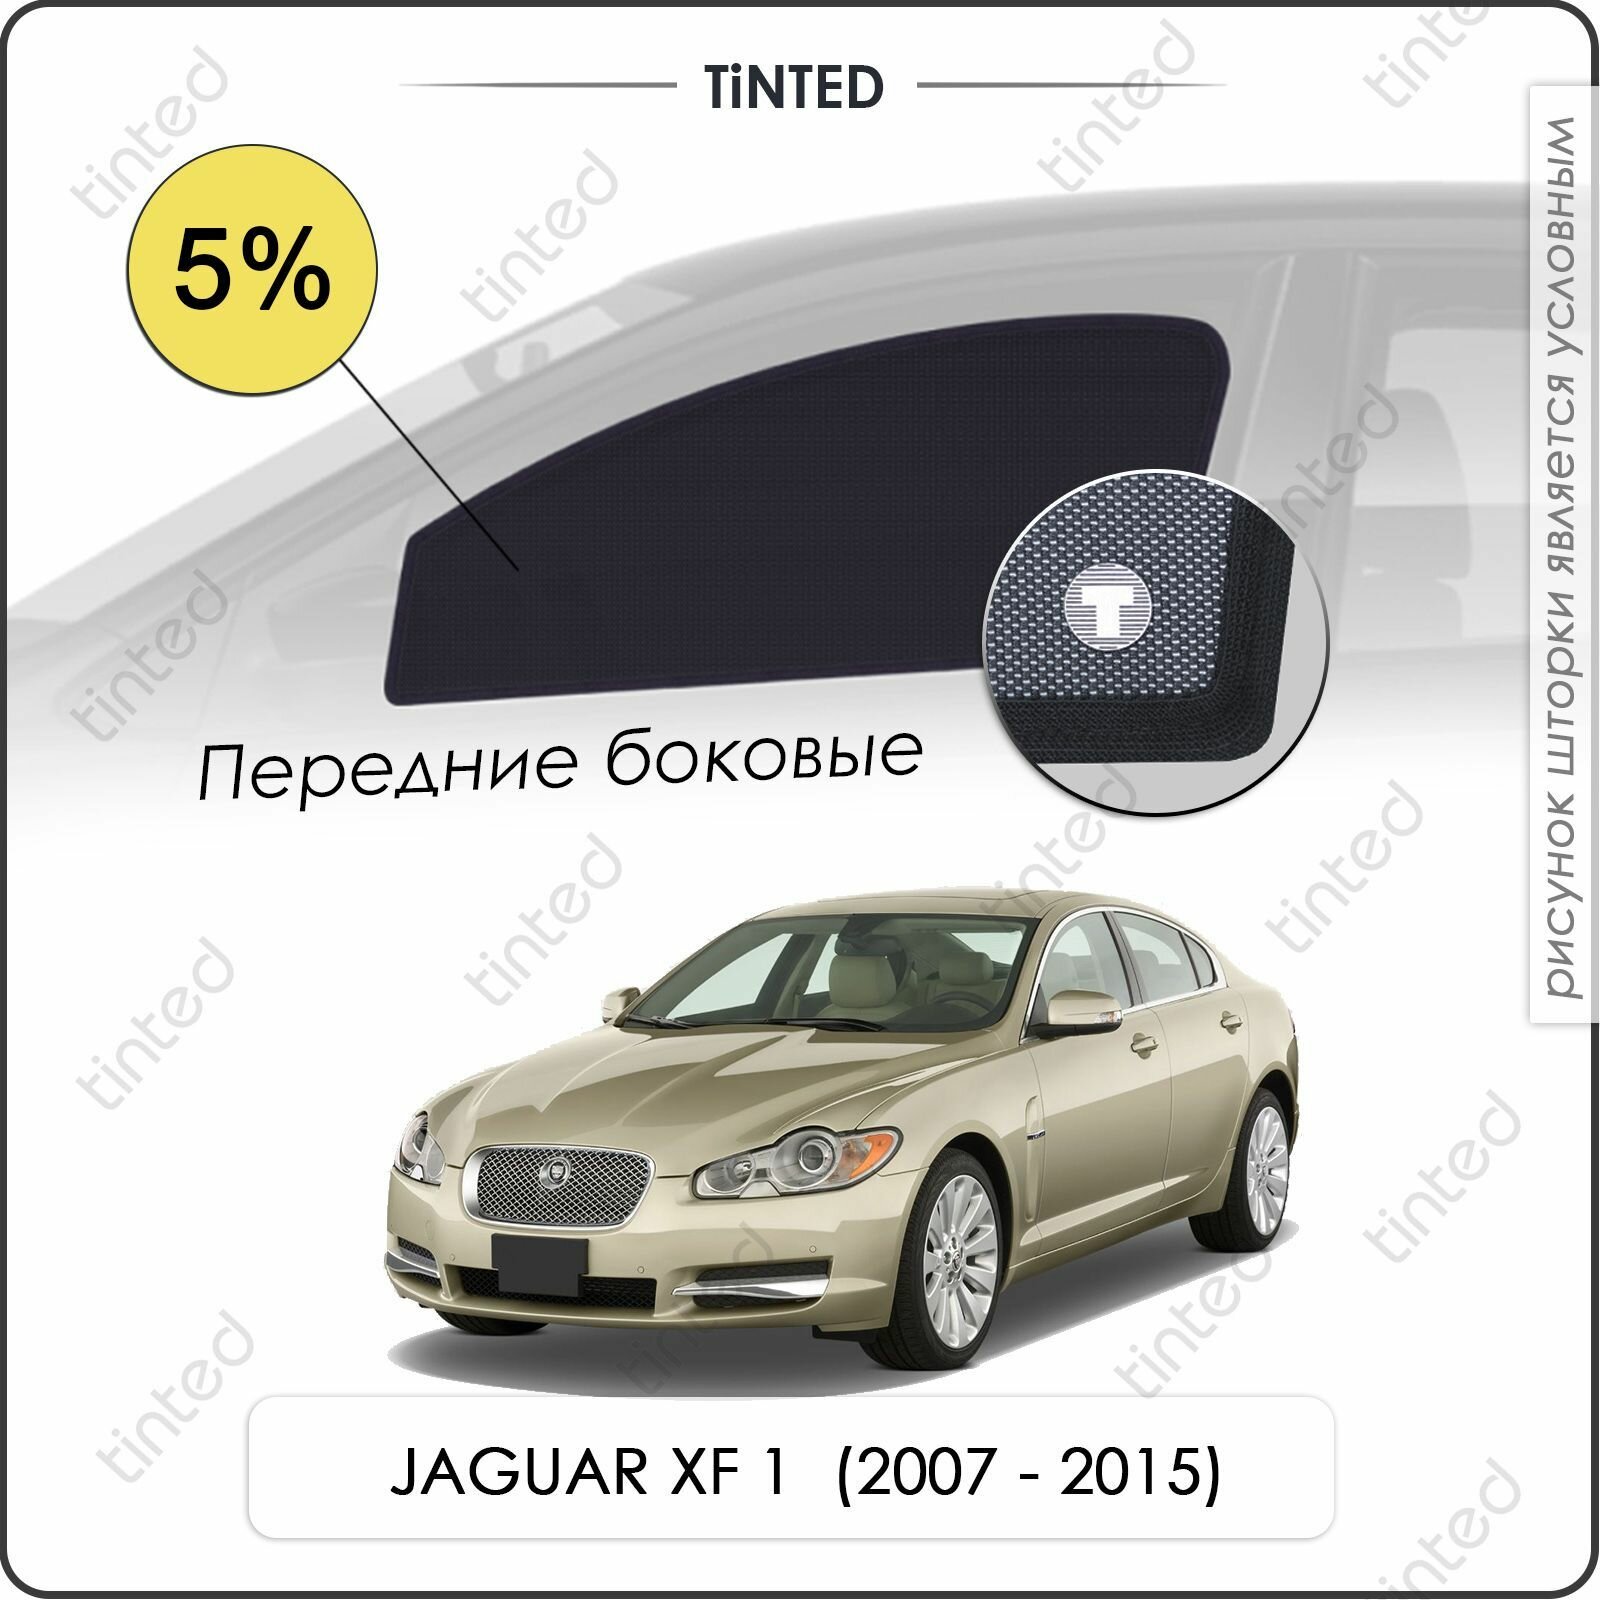 Шторки на автомобиль солнцезащитные JAGUAR XF 1 Седан 4дв. (2007 - 2015) на передние двери 5%, сетки от солнца в машину ягуар ХФ, Каркасные автошторки Premium